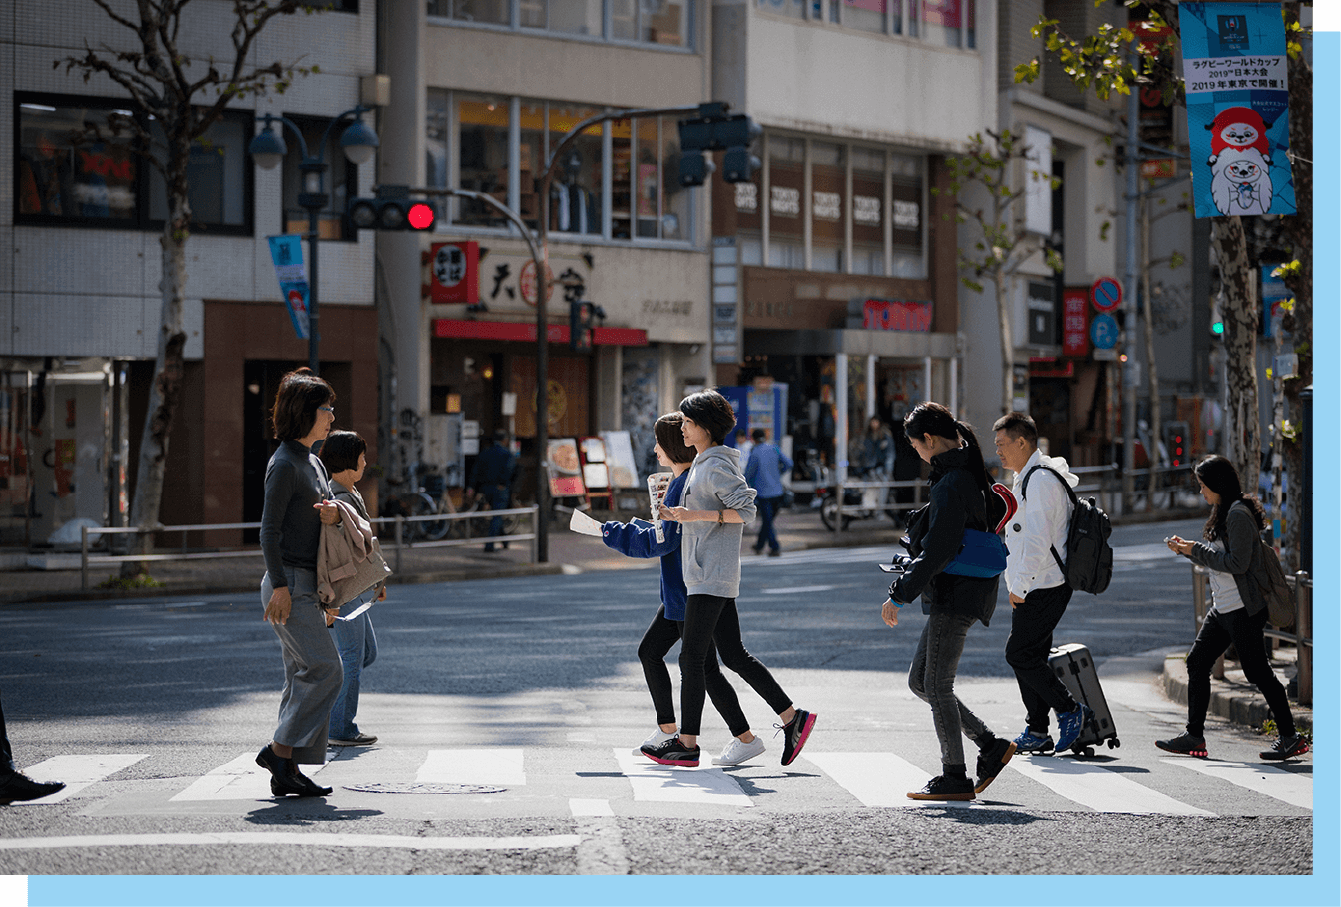 普段はよく歩く通りであっても、地図を片手に小走りしながら巡るとまた違った感覚が。他の参加者と街中であう瞬間も楽しい。地図や手首の青いラバーバンドが目印